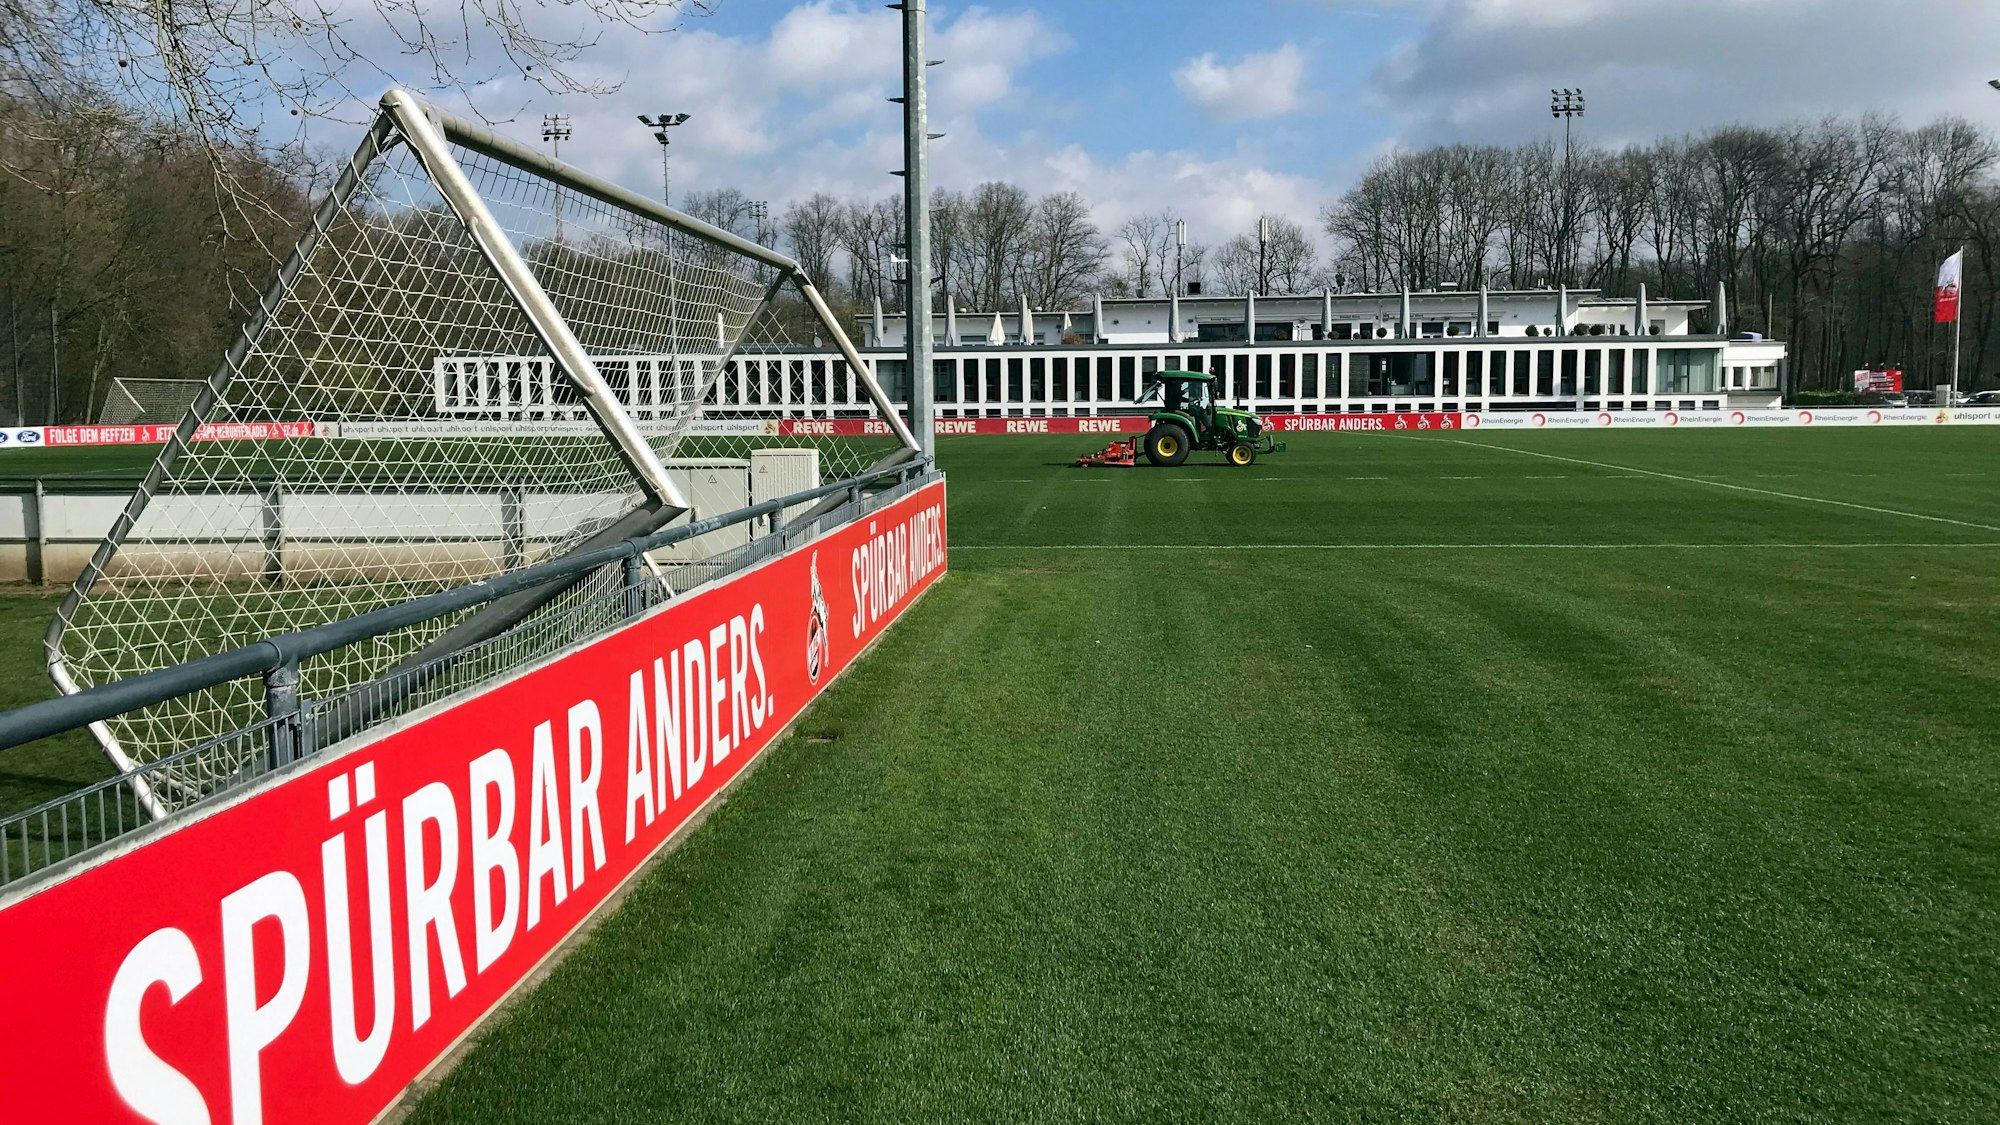 Seit 1953 ist das Geißbockheim die Heimat des 1.FC Köln. Auch in Zukunft werden Profis und Nachwuchskicker hier trainieren.